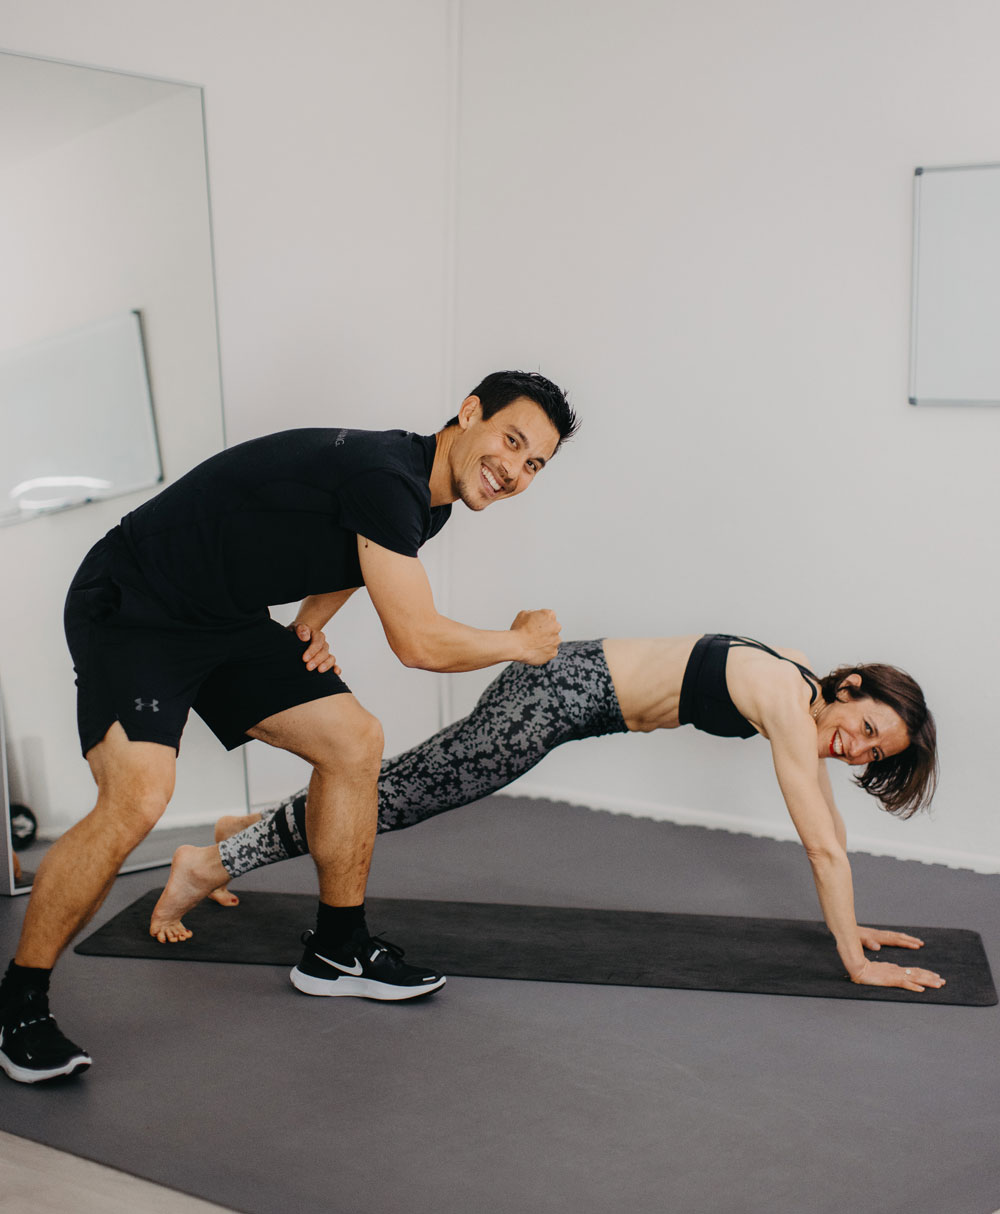 In der exklusiven Serie sonrisa x HIRANOTRAINING gibt es von Sportwissenschaftler und Mental Coach Julien Hirano einfache Tipps für die geistige und körperliche Fitness – heute mit einem Trainigsvideo mit fünf Übungen für einen starken Bauch.